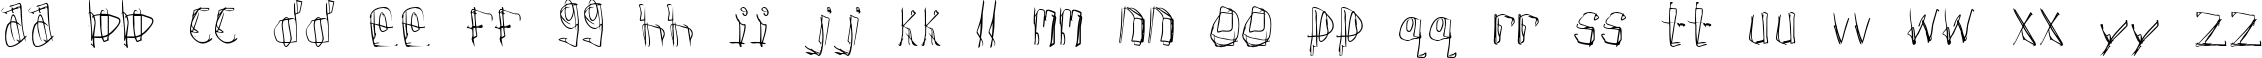 Пример написания английского алфавита шрифтом Donner